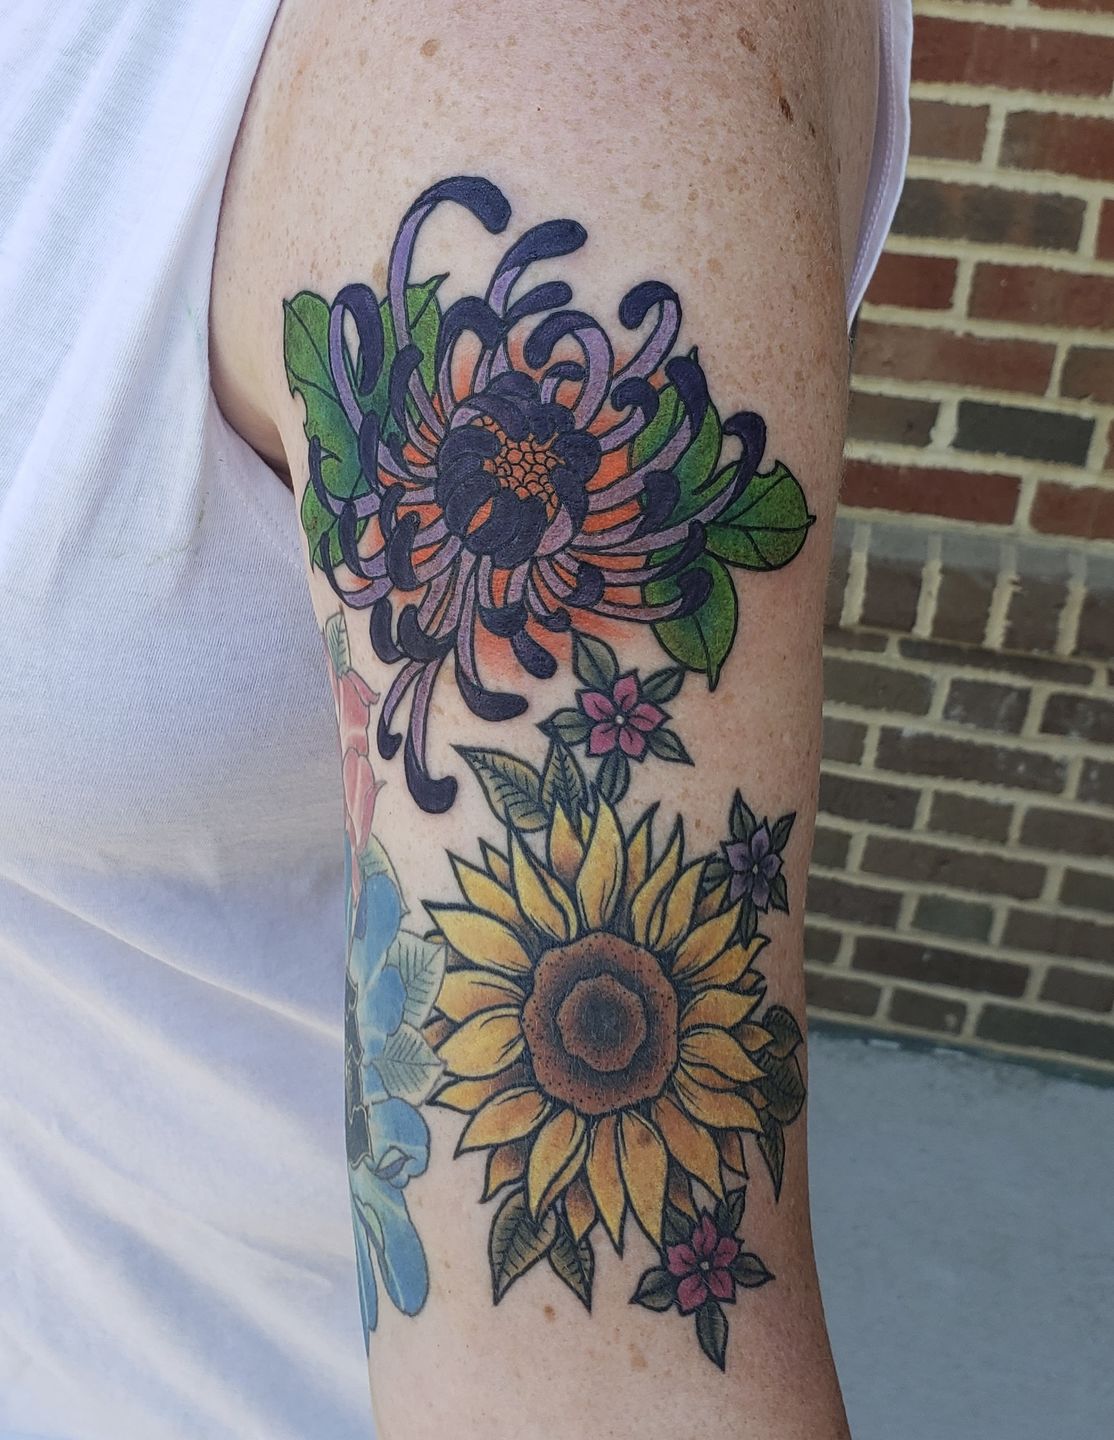 Chrysanthemum tattoo from my flash by me Olivia Hartranft Boston Street  Tattoo Lynn MA swipe to see flash  rtattoo